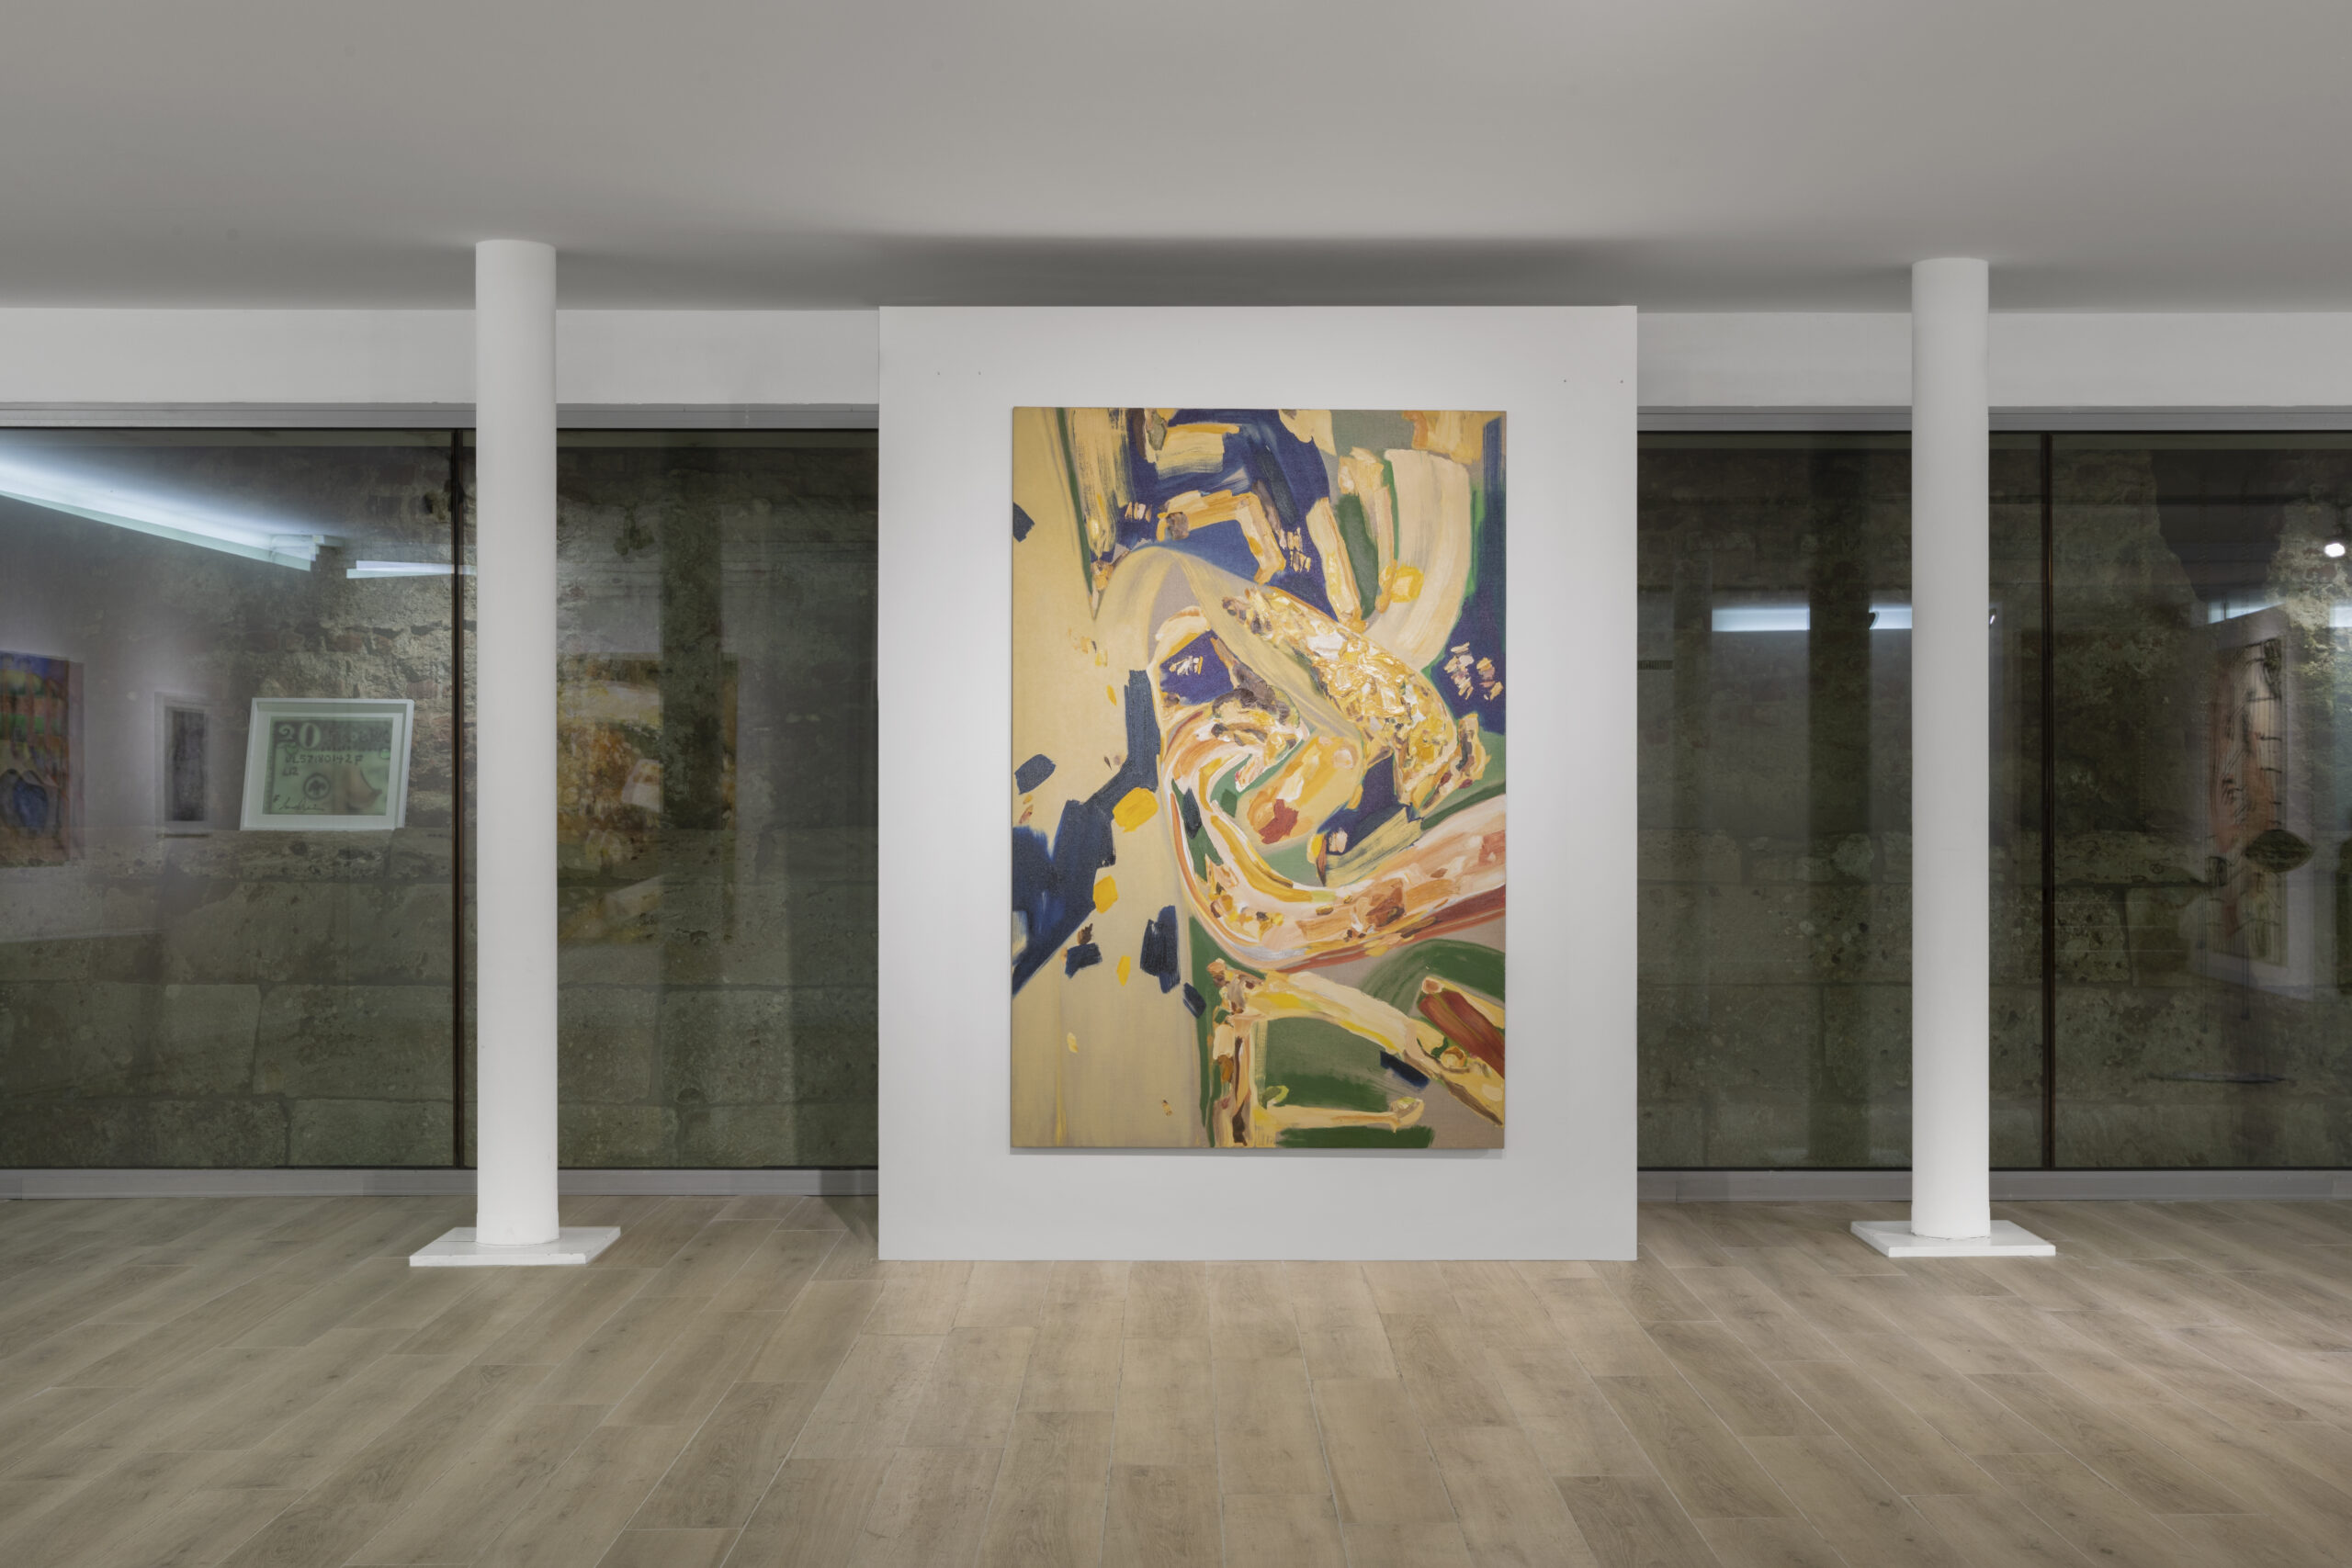 Solenne Fabre, Symbiose, 2021, oil on linen, 195 x 130 cm